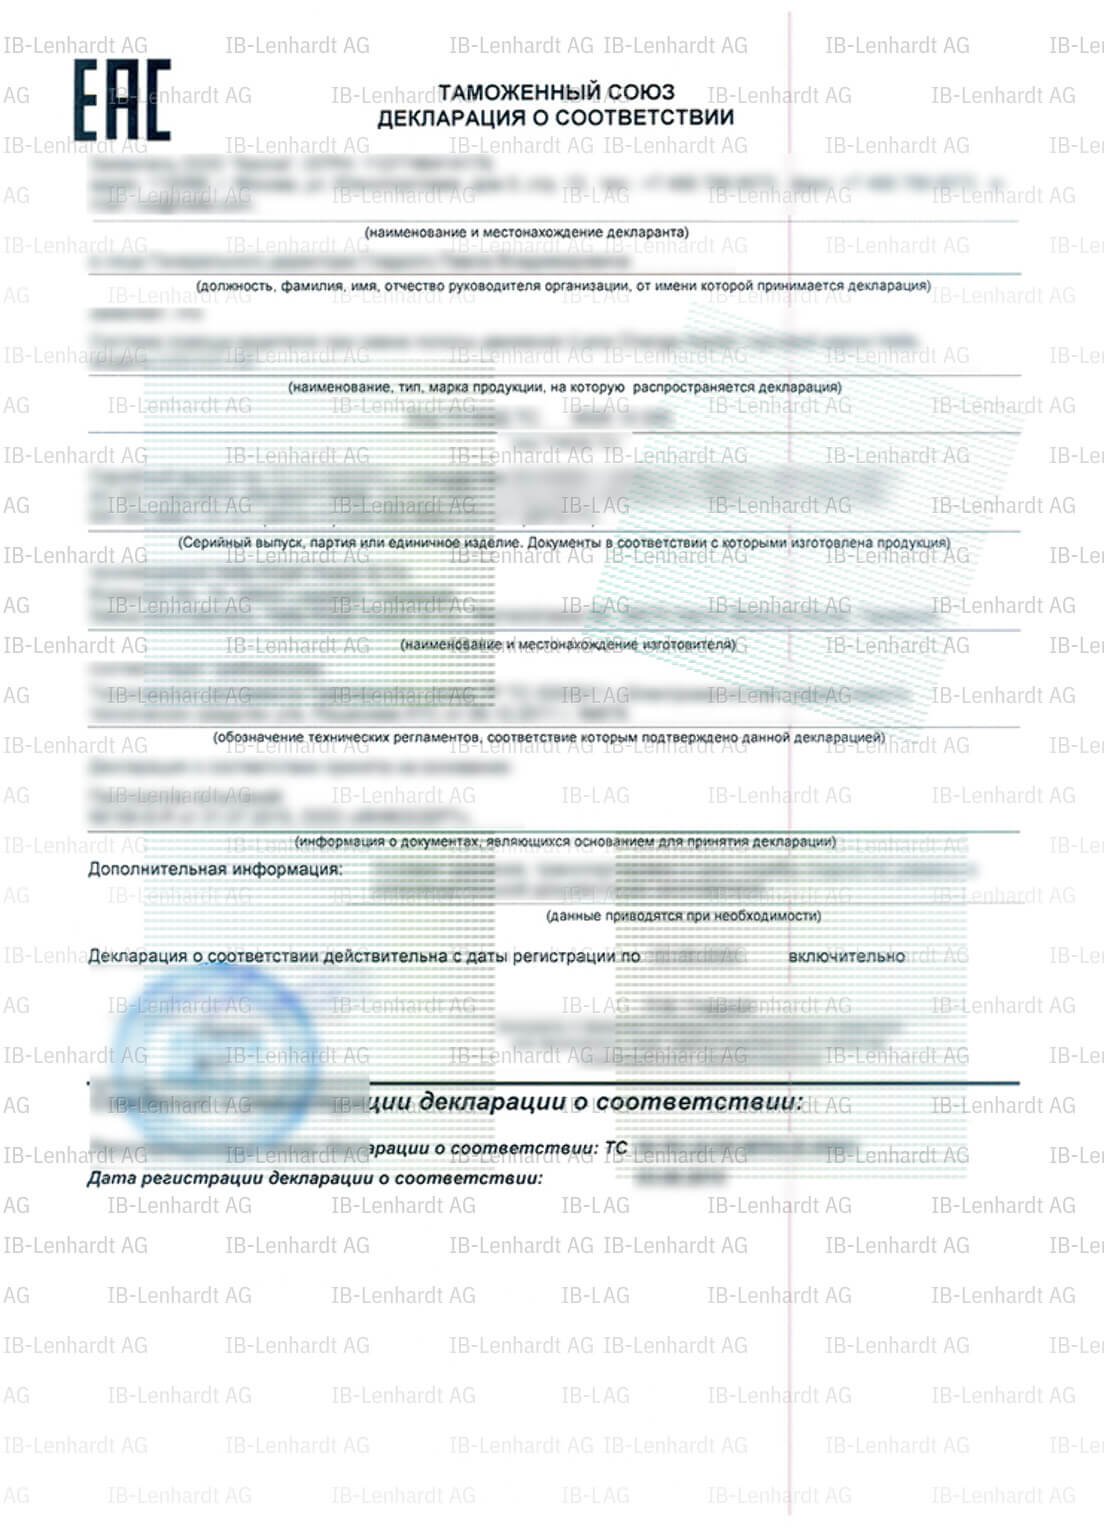 認証書の例 ロシア連邦